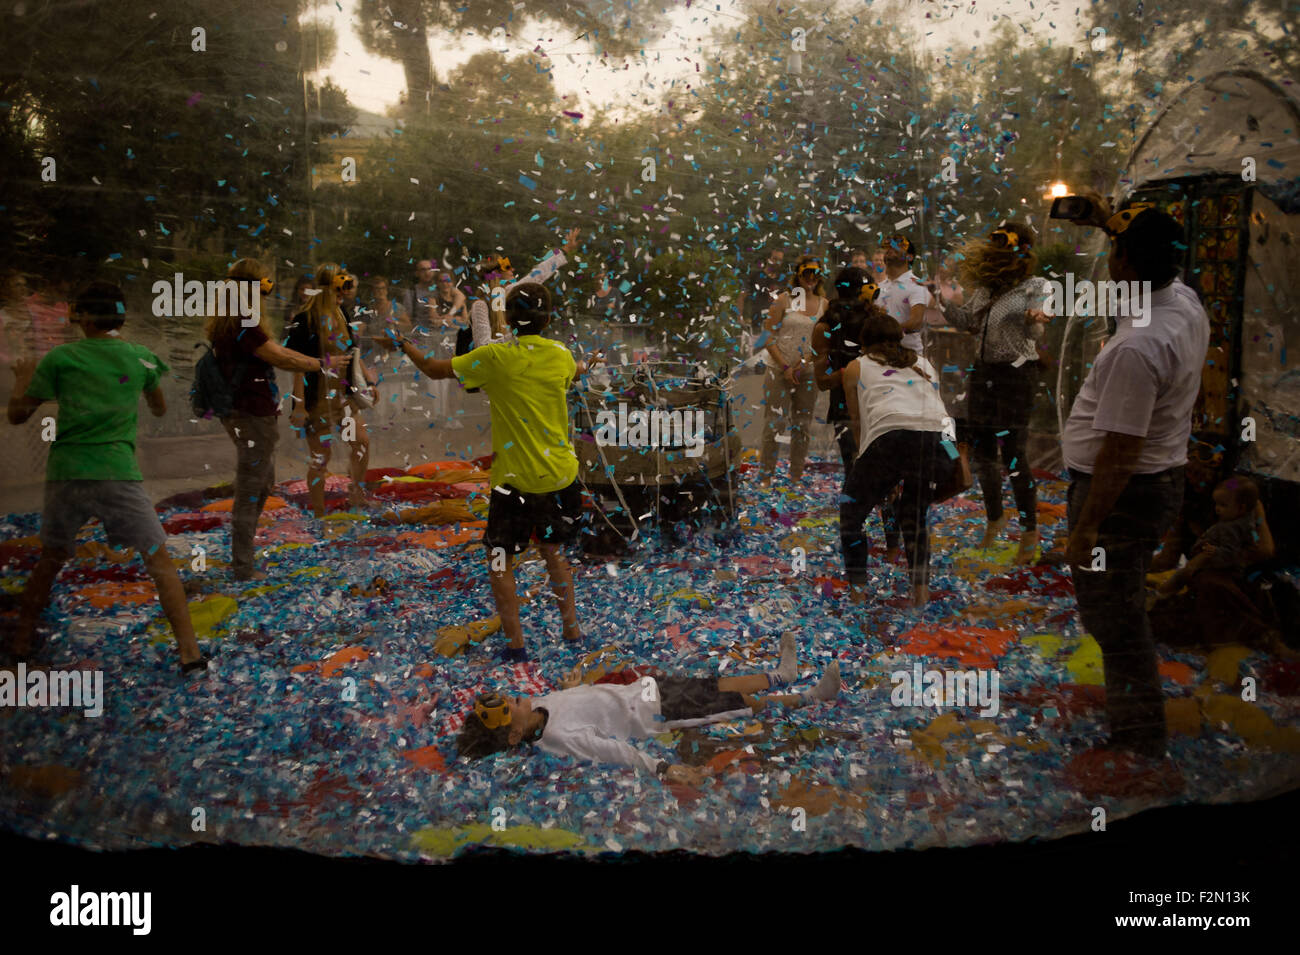 Barcelone, Espagne. 21 Septembre, 2015. Les gens jouent et jettent des confettis à l'intérieur d'une bulle en plastique géante lors de la Merce Festival (Festes de la Merce) à Barcelone, Espagne, le 21 septembre 2015. Le Parc de la Ciutadella à Barcelone est le paramètre pour les représentations et les activités dans le cadre des festivités de la Merce 2015. Crédit : Jordi Boixareu/Alamy Live News Banque D'Images